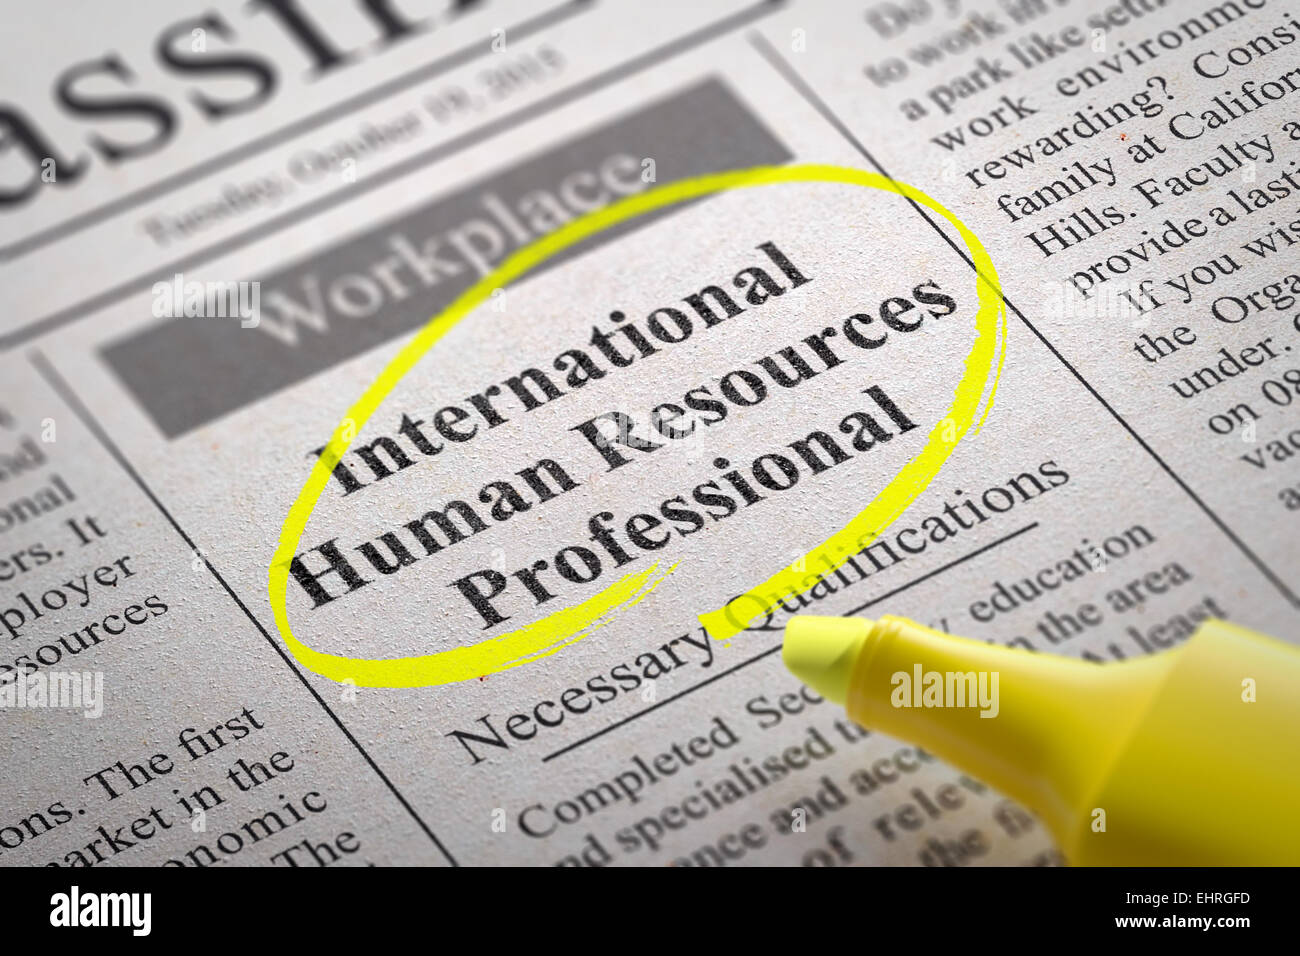 International Risorse Umane Professional vacante nel giornale. Foto Stock